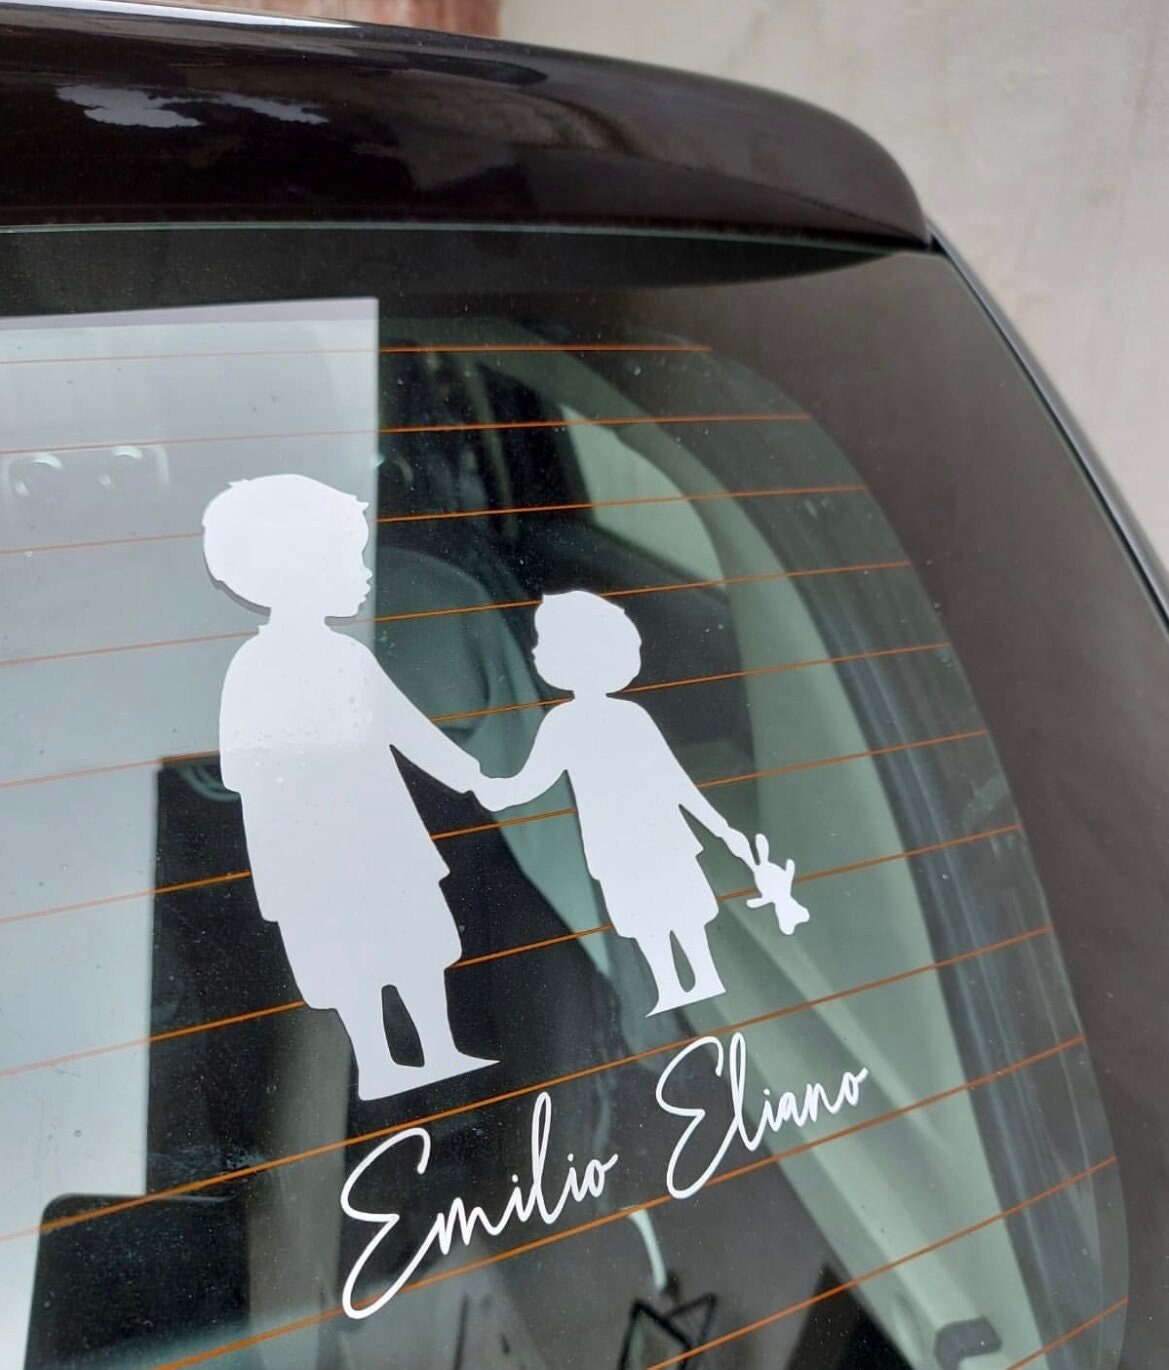 Baby on board car sticker - .de